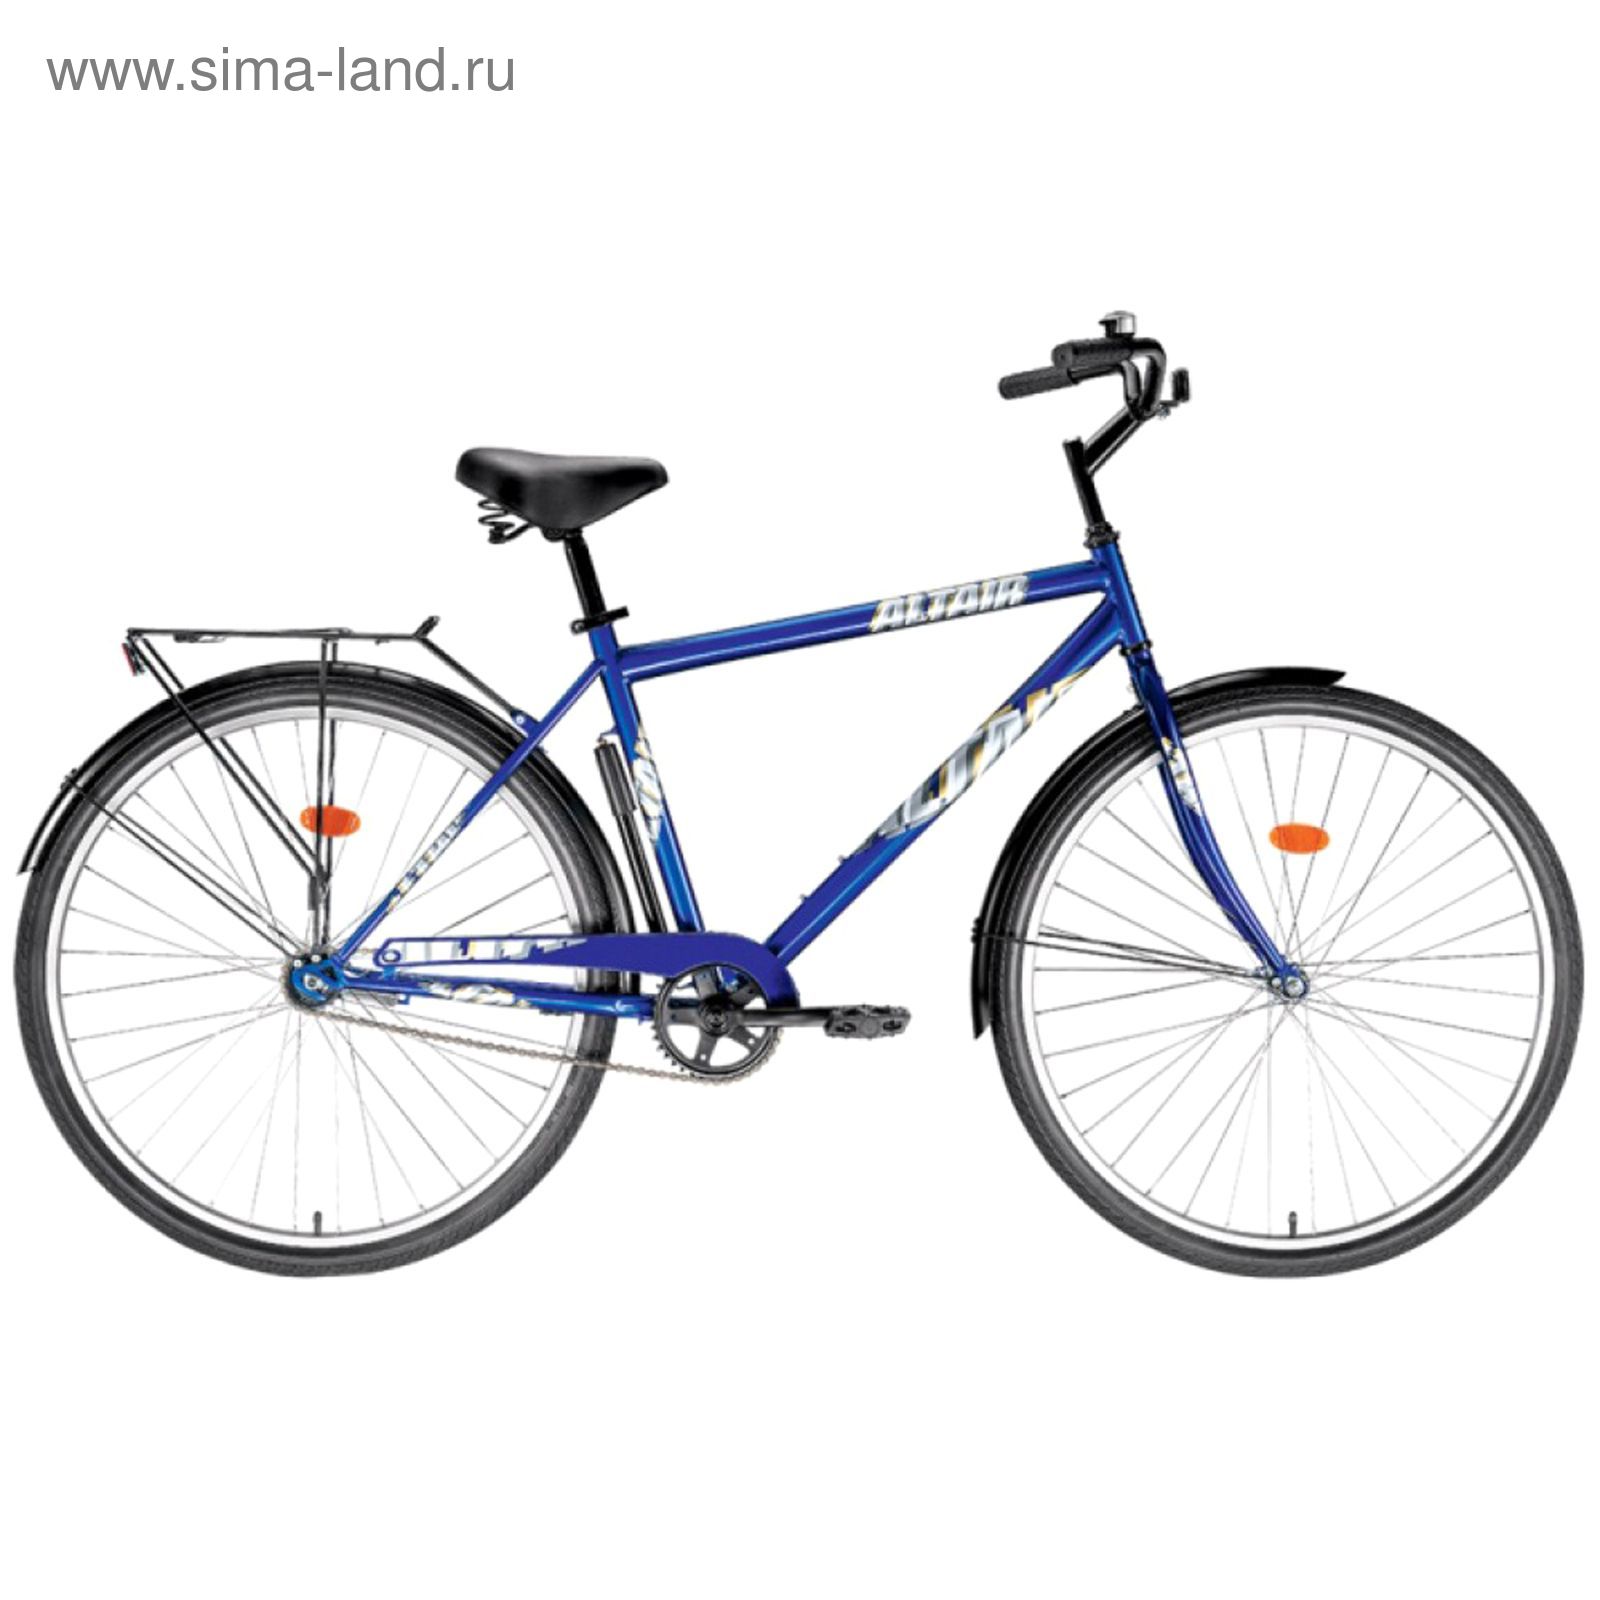 Велосипед 28" Altair City high 28, 2017, цвет синий, размер 19"